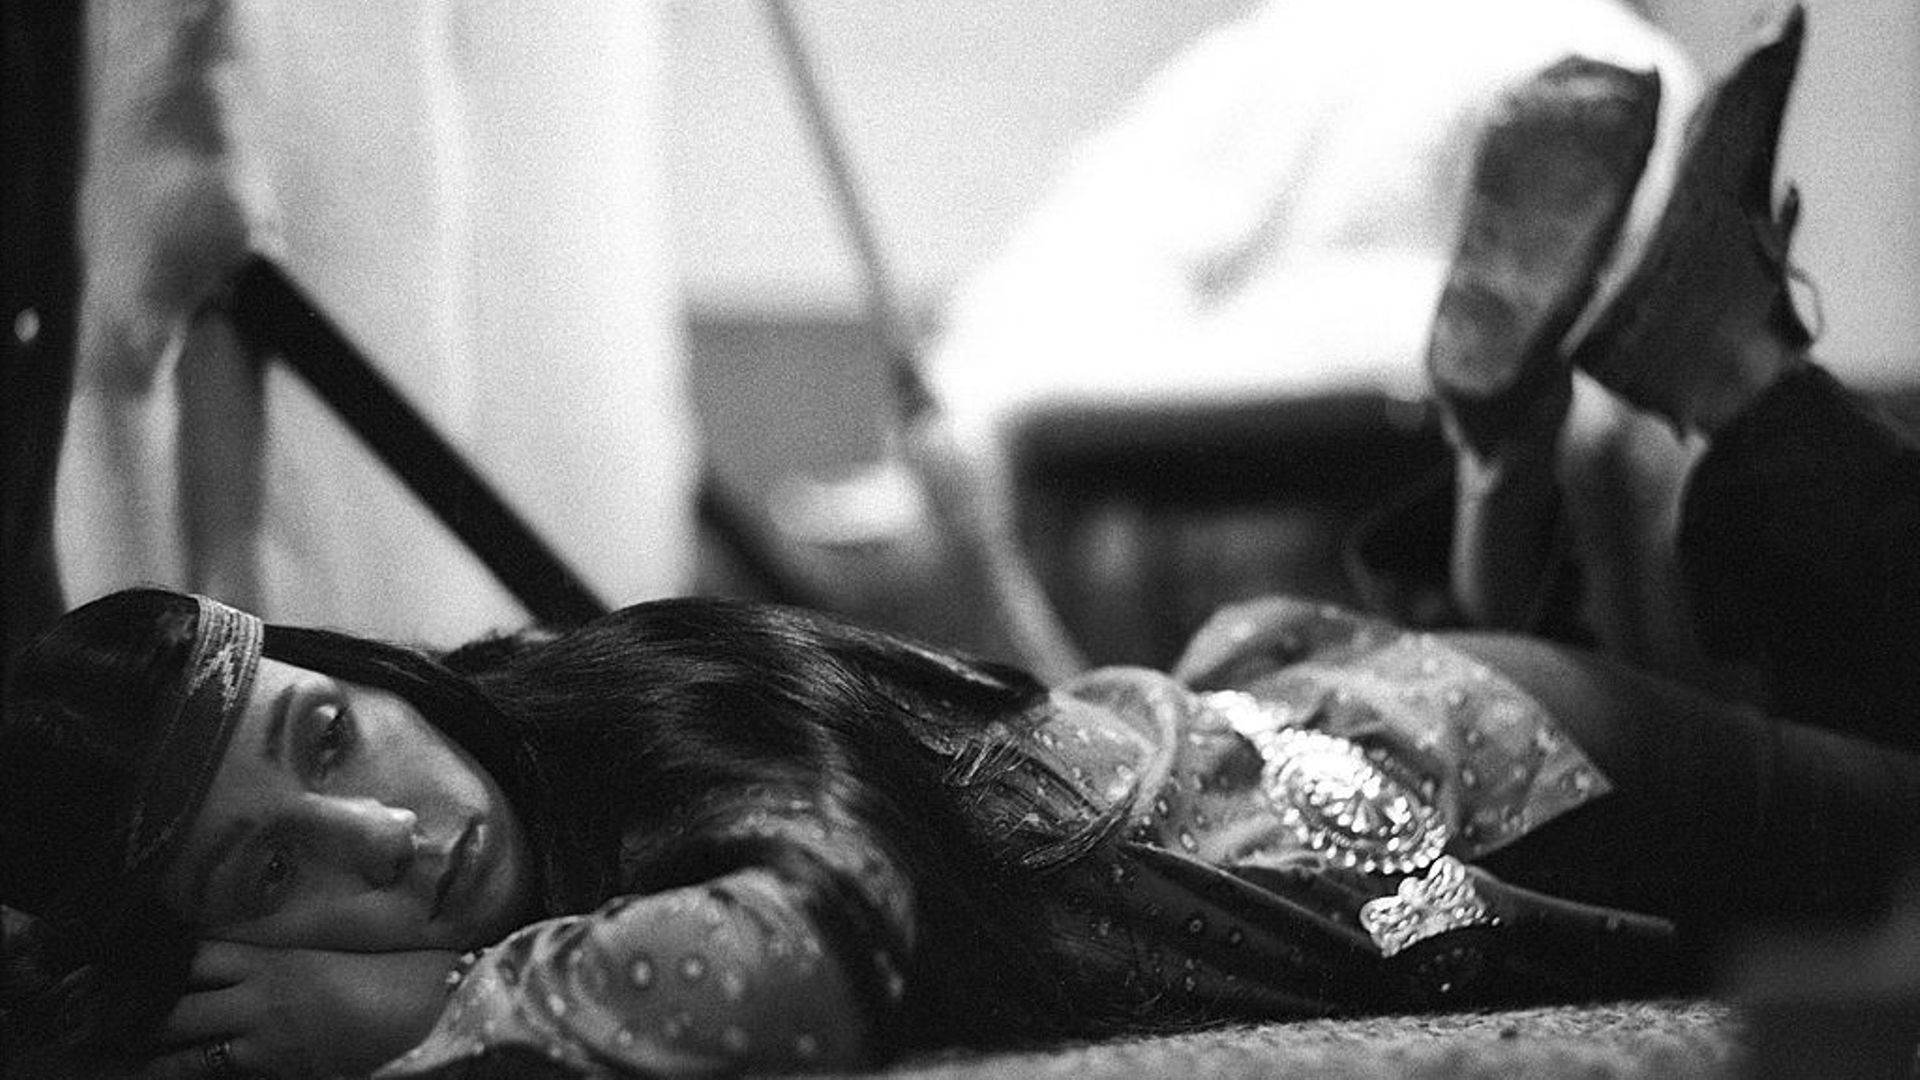 Cher lors d’une session d’enregistrement pour son album "3614 Jackson Highway" le 5 mai 1969. (Photo prise par Michael Ochs Archives)